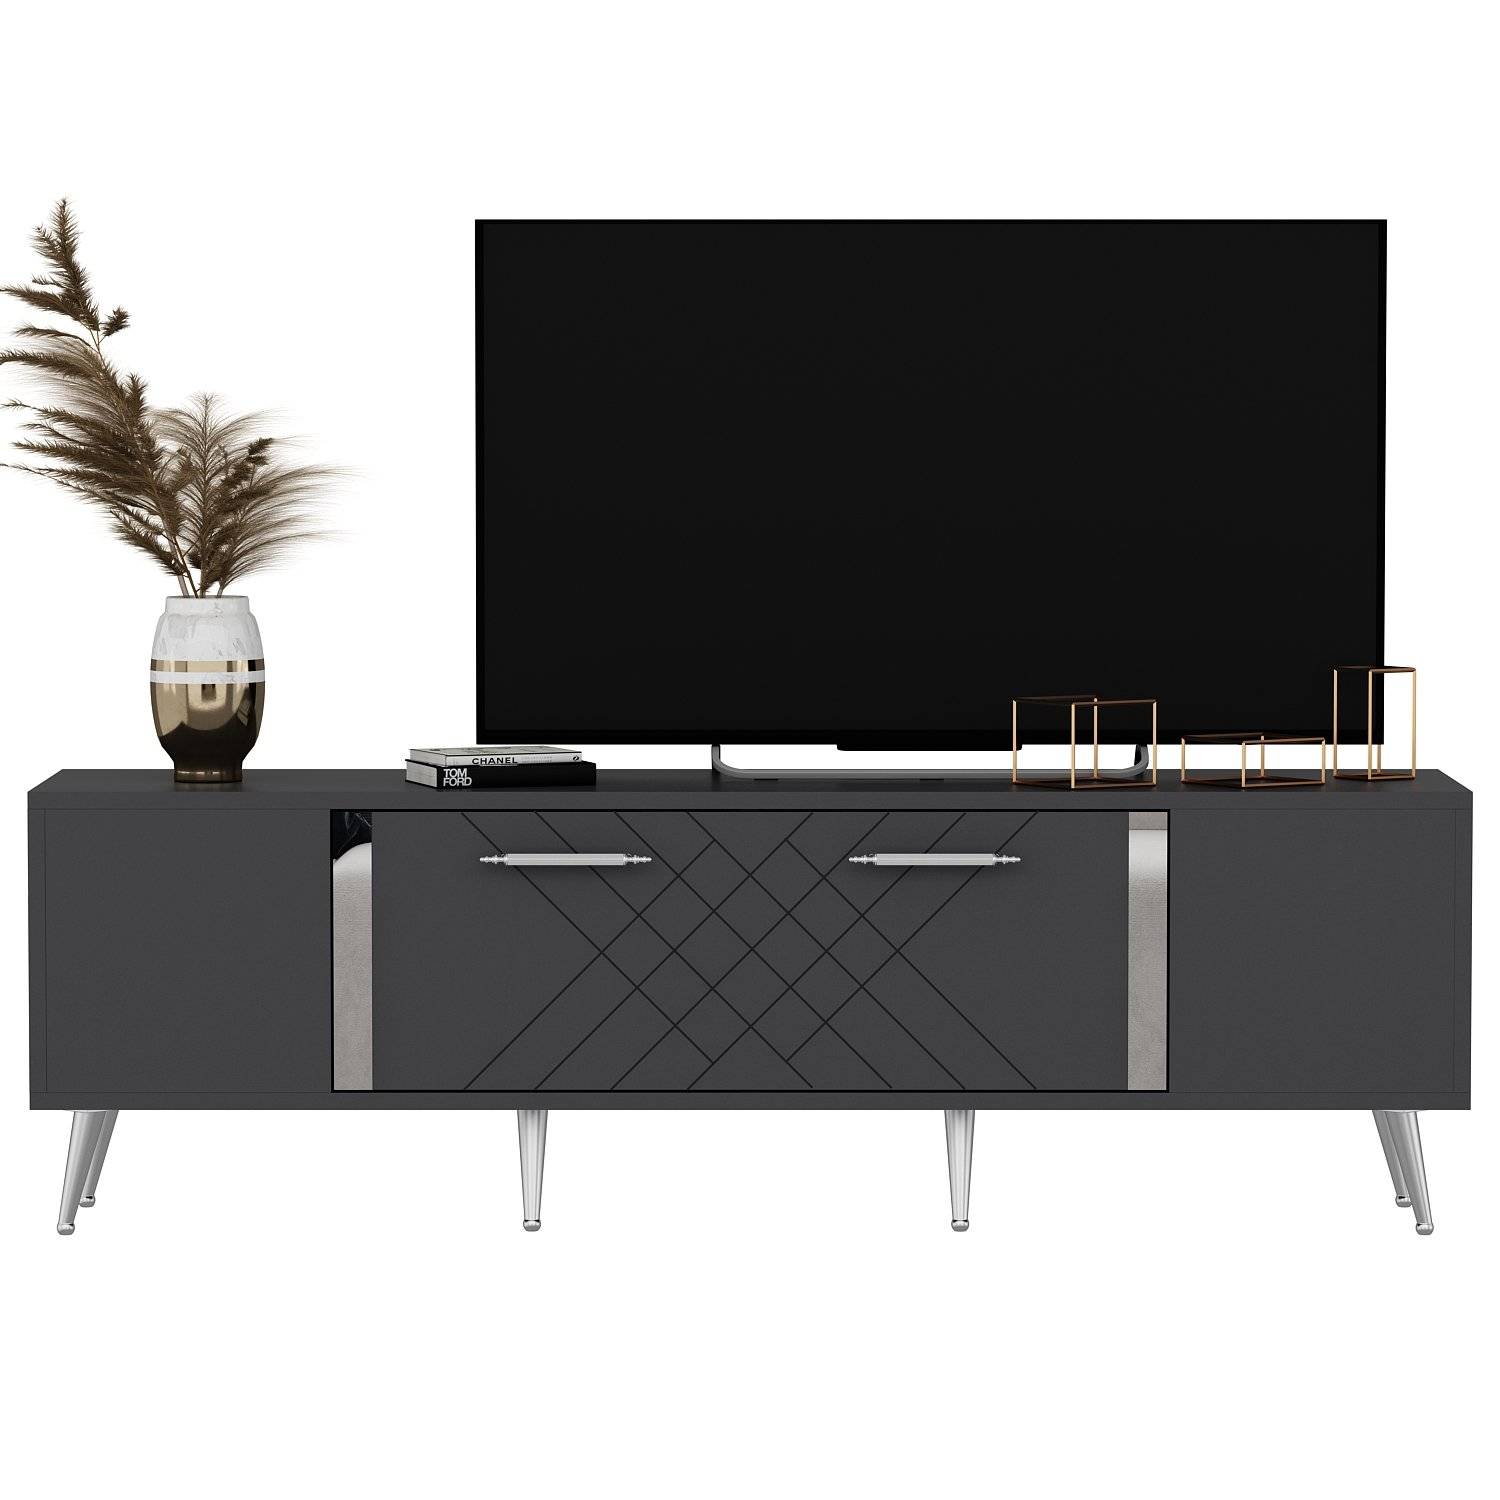 Bourgondisch TV-meubel 150cm Antraciet en Zilver